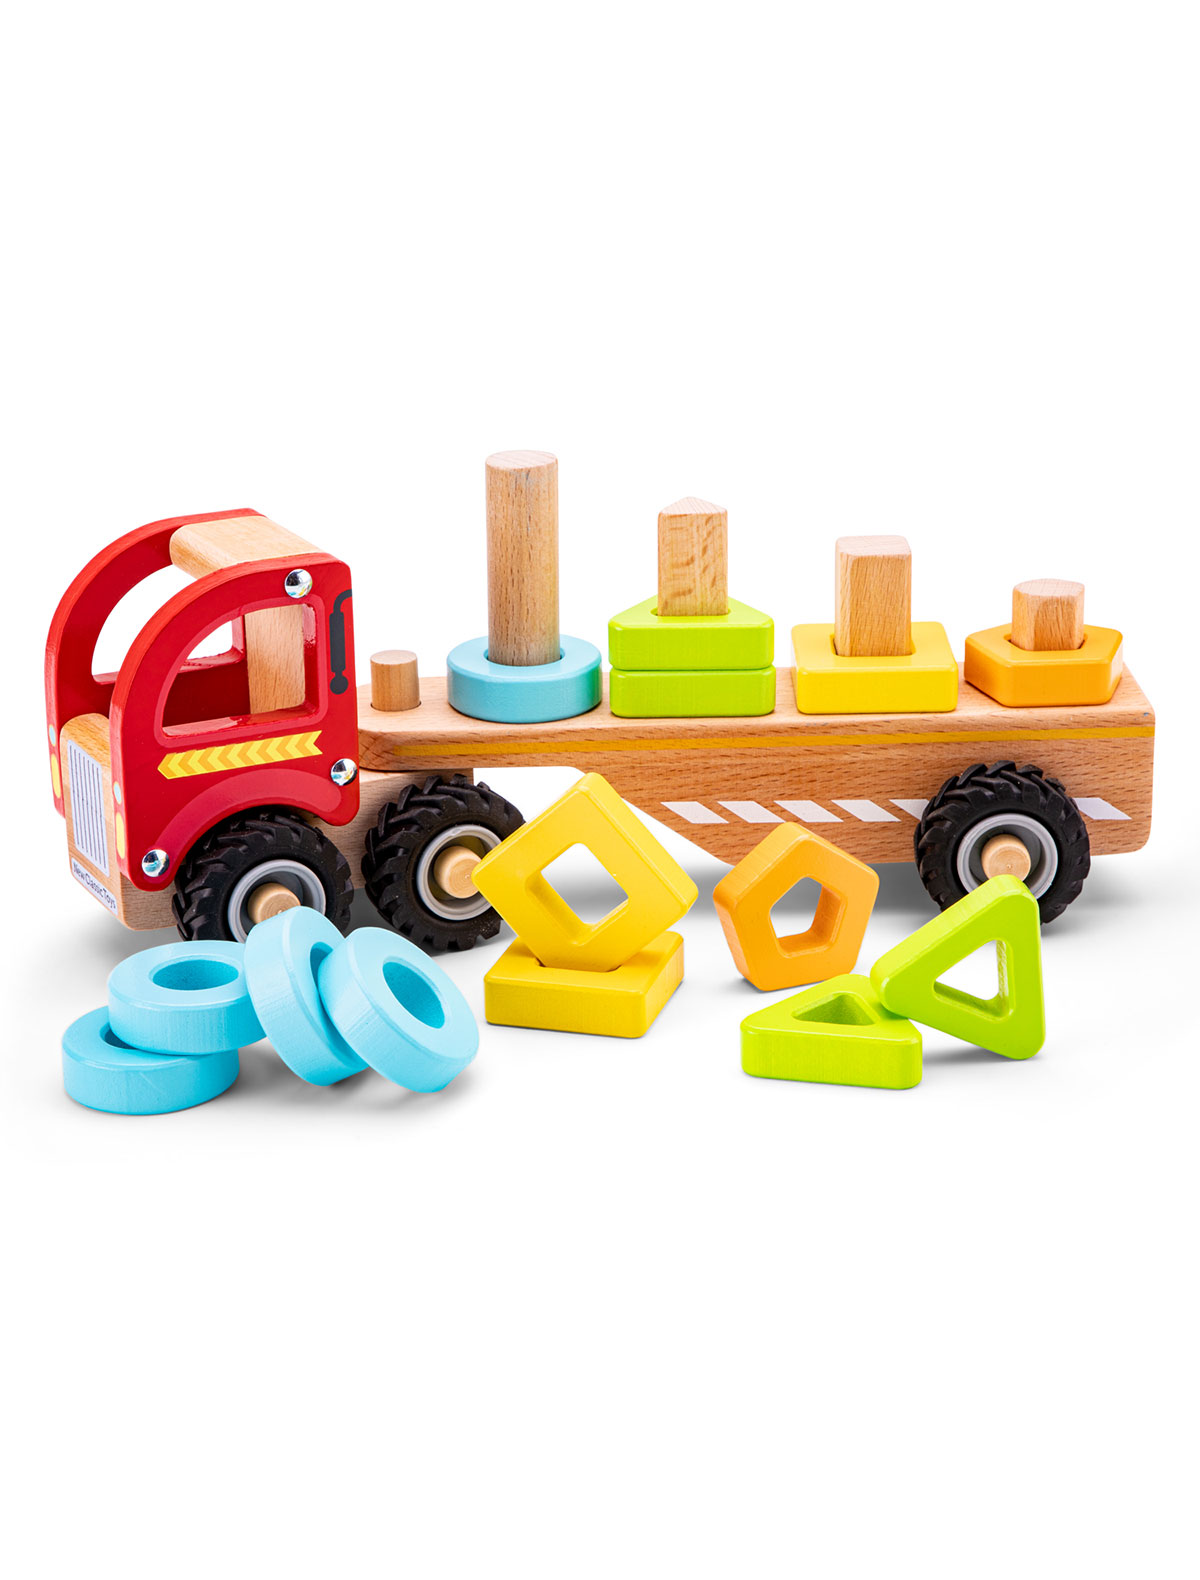 Игрушка развивающая New Classic Toys деревянная игрушка plan toys сортер доска с геометрическими фигурами